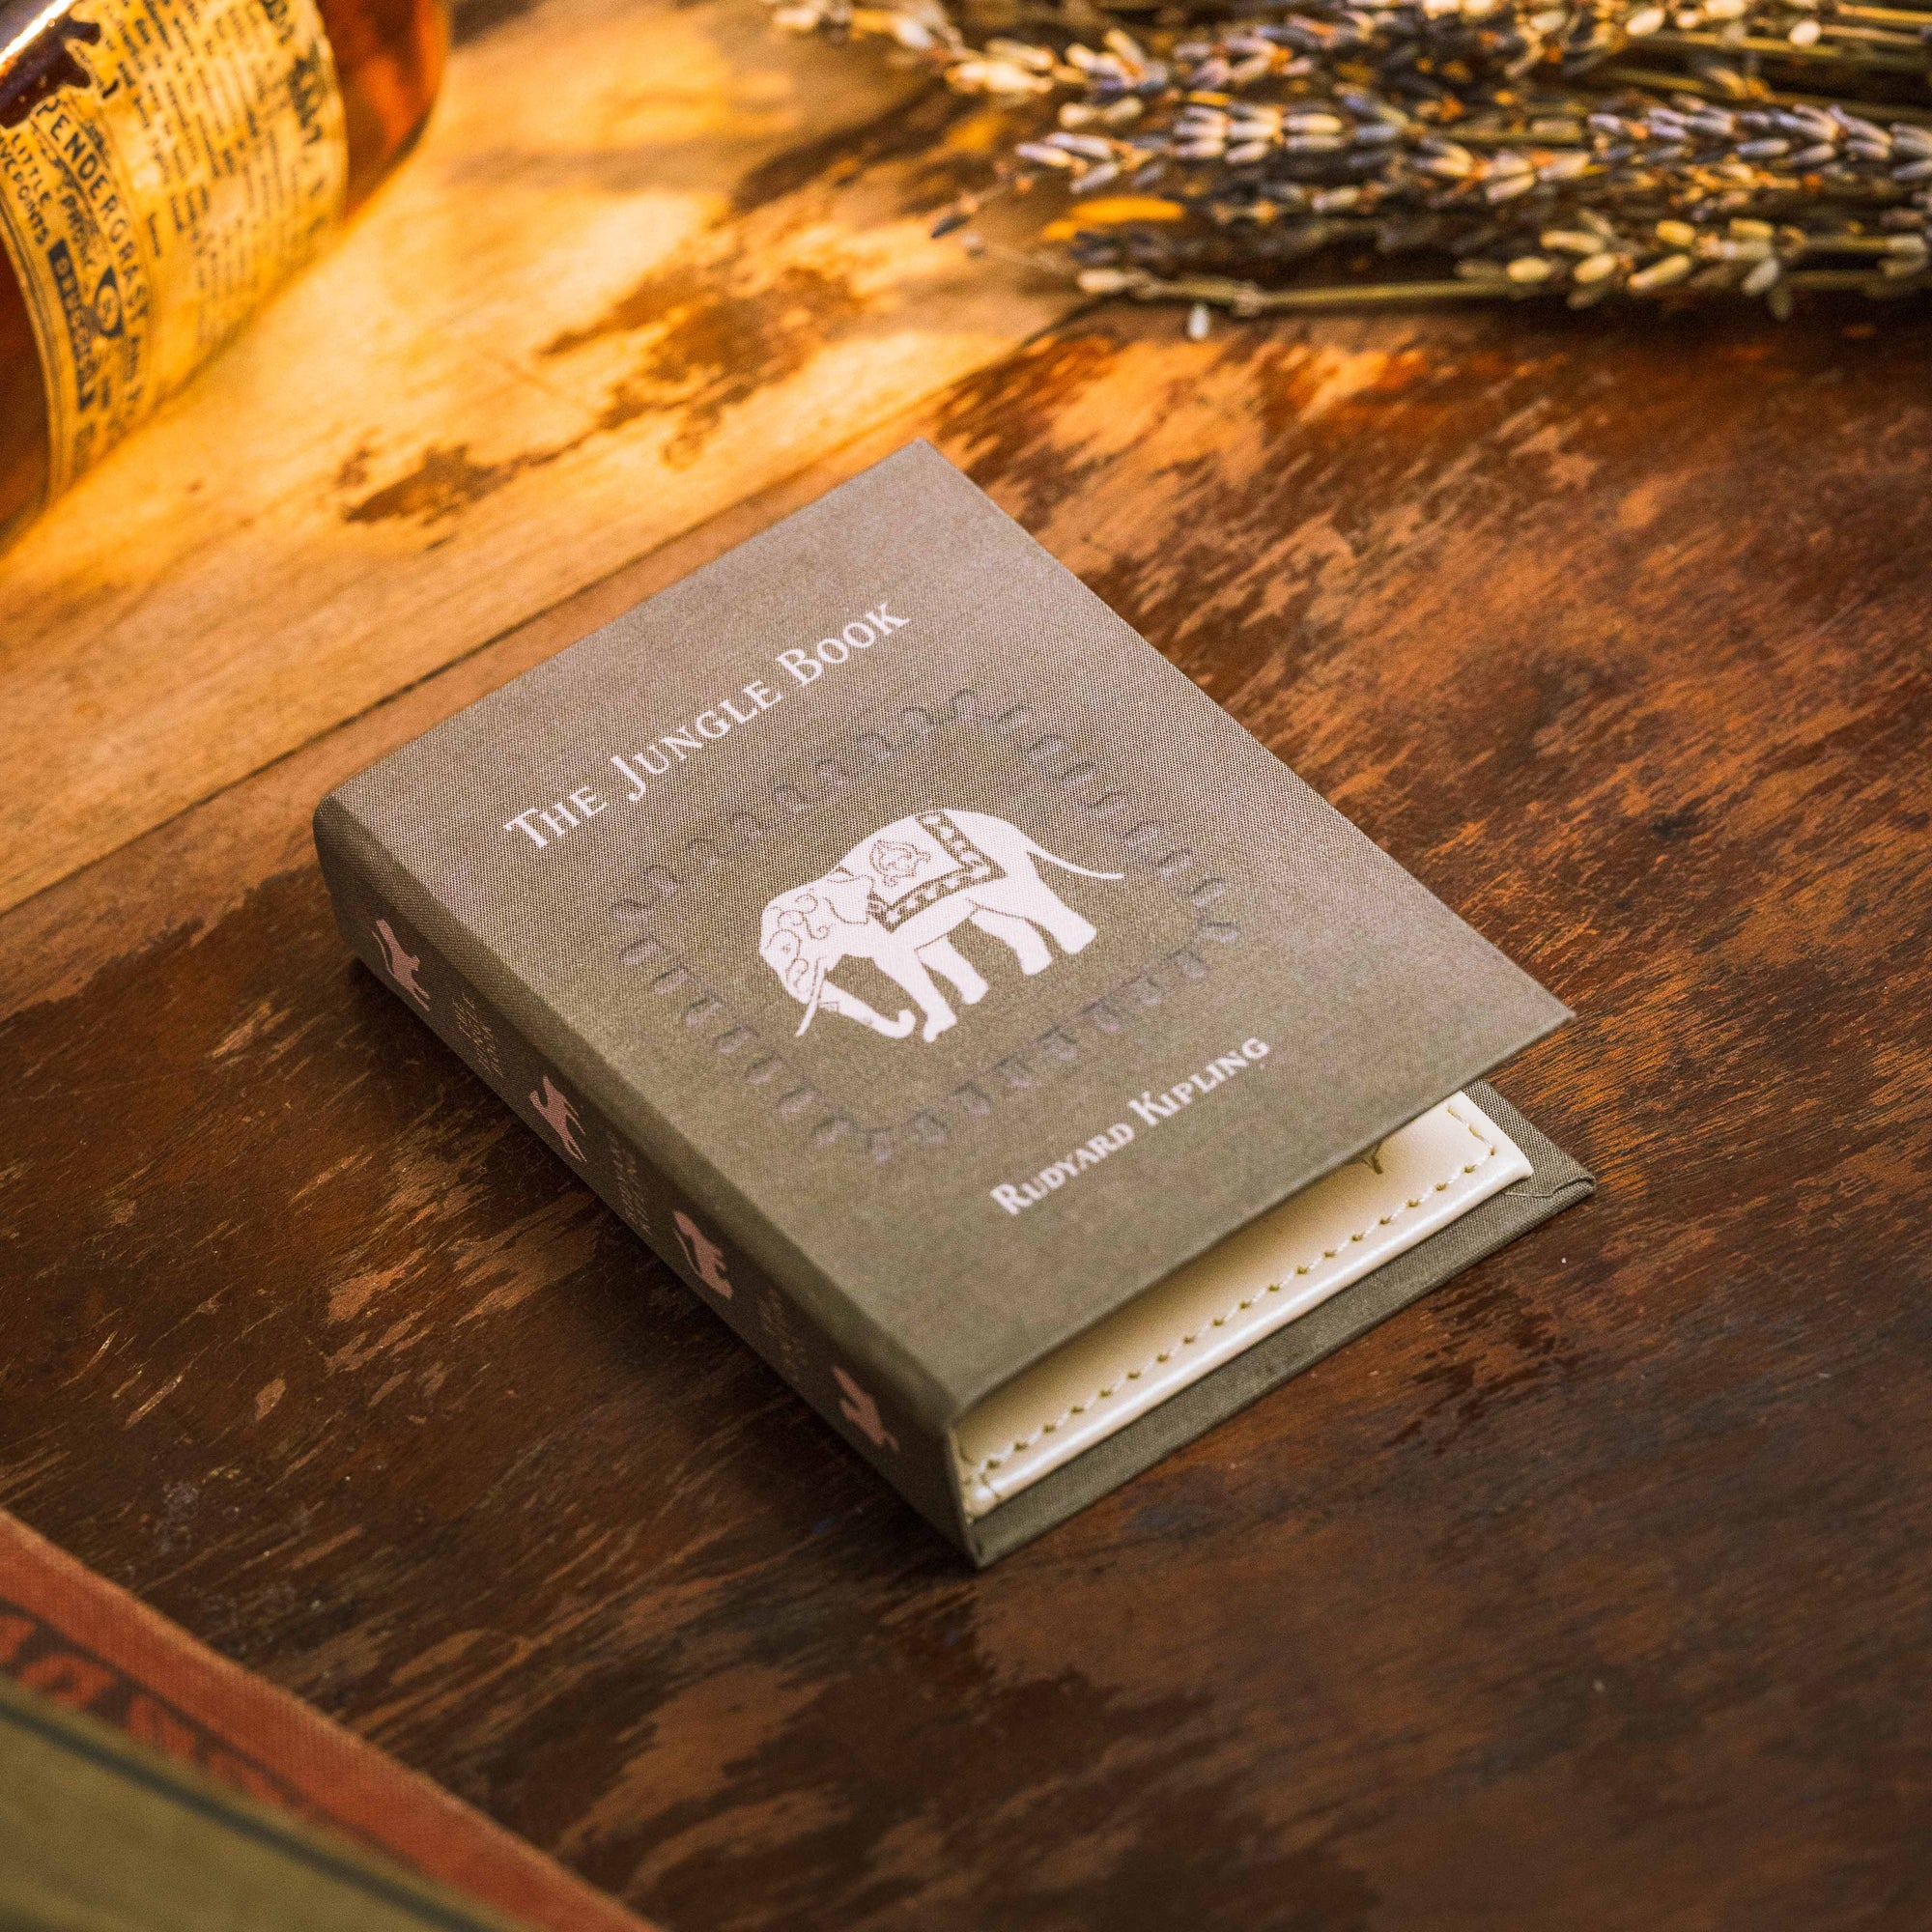 The Jungle Book by Rudyard Kipling 1894 Book Wallet